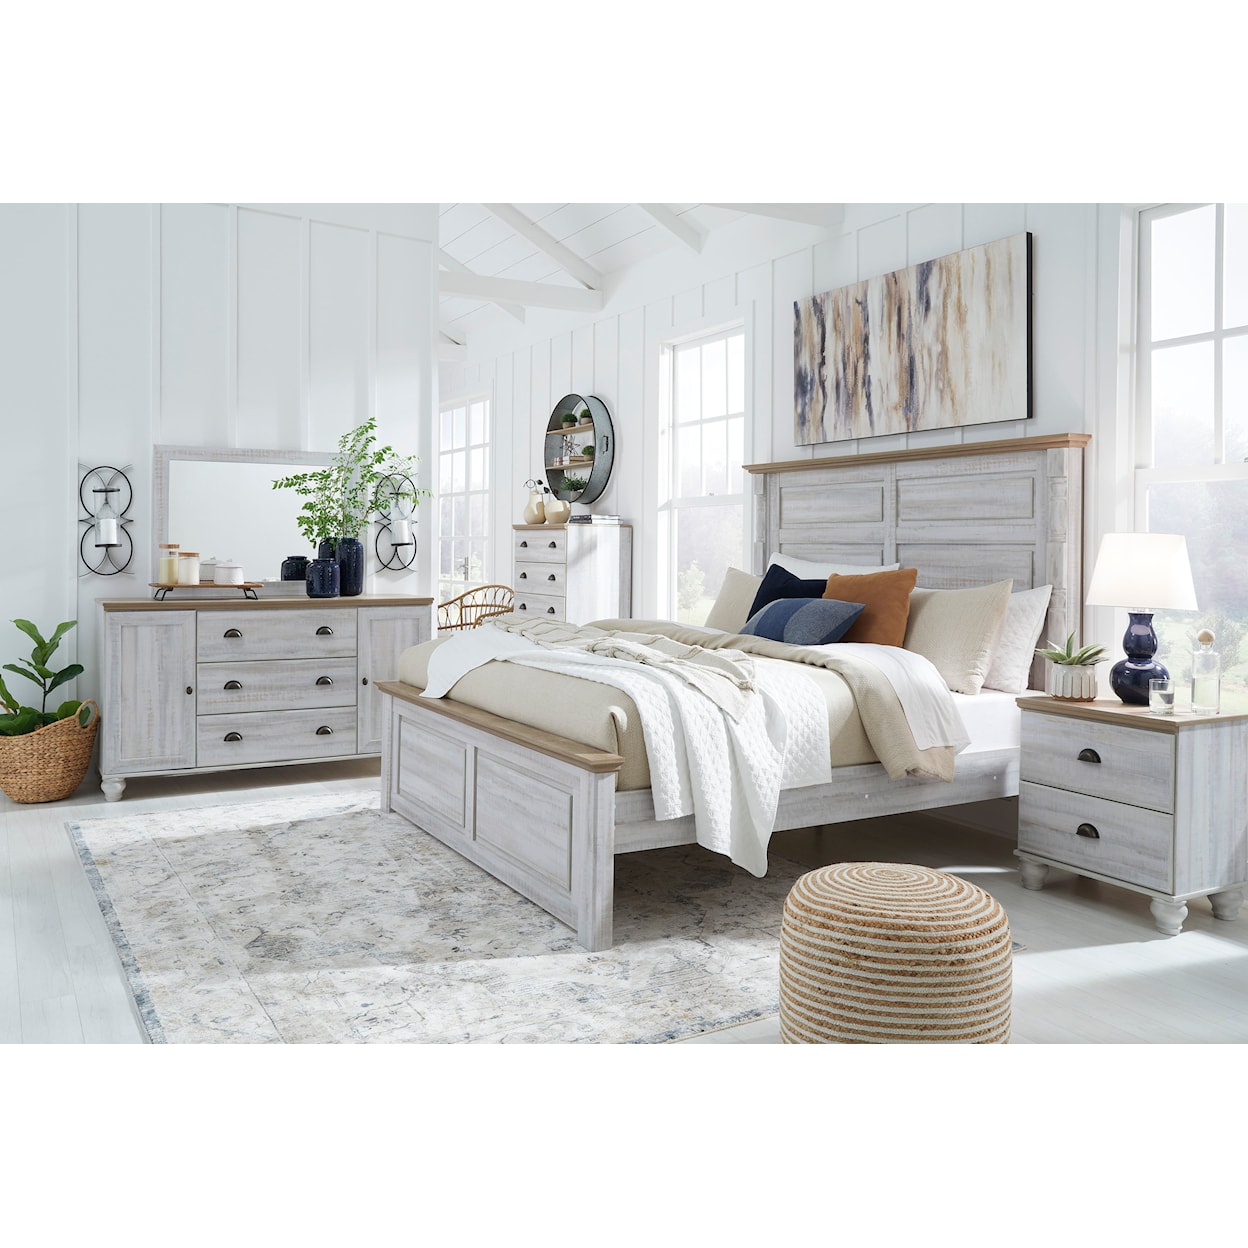 Signature Design by Ashley Furniture Haven Bay King Bedroom Set